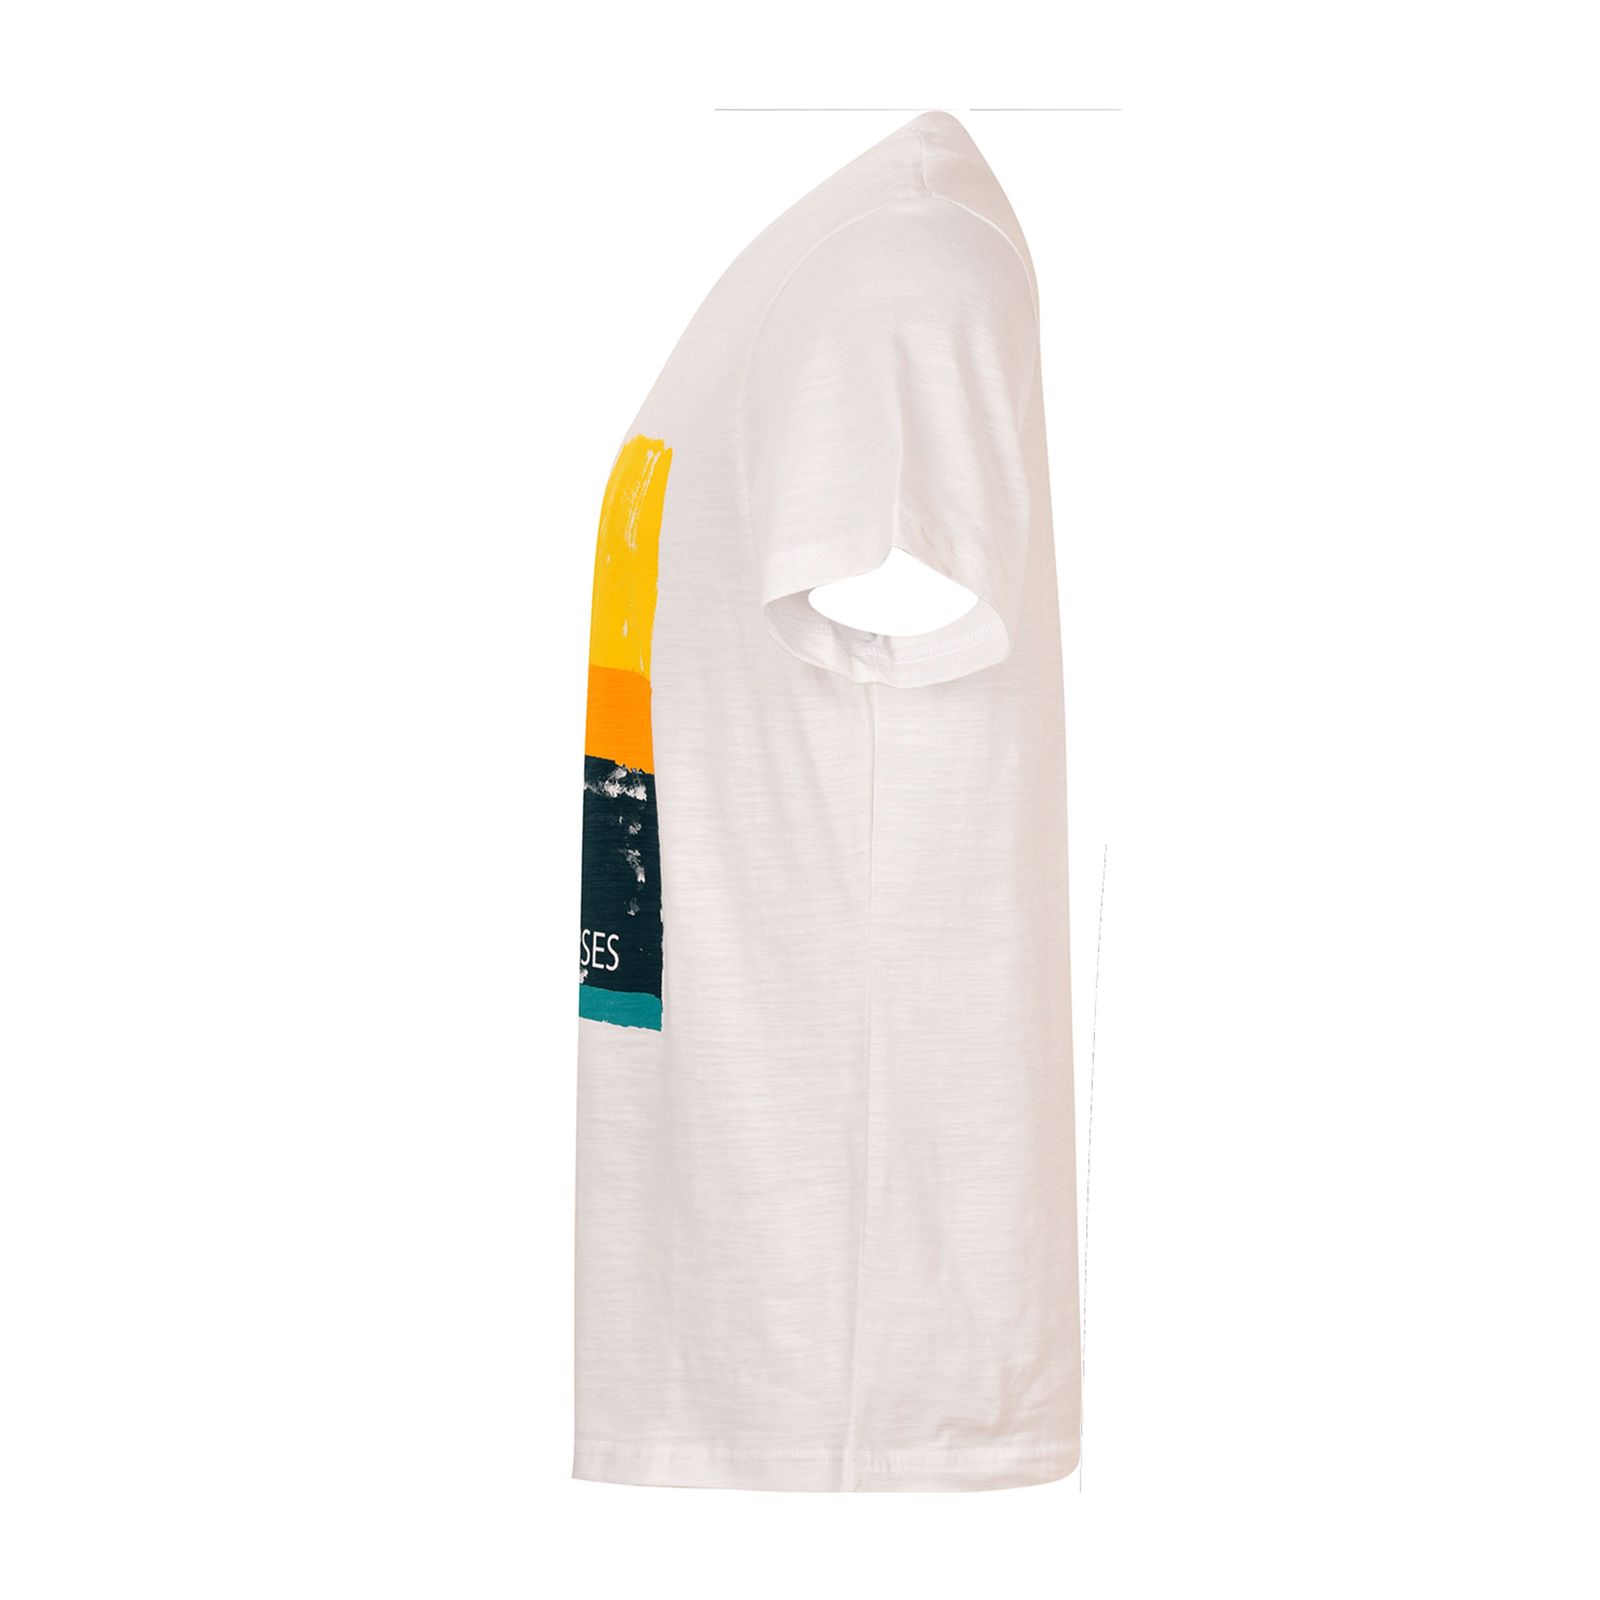 تی شرت آستین کوتاه مردانه بادی اسپینر مدل 3432 کد 1 رنگ سفید -  - 3